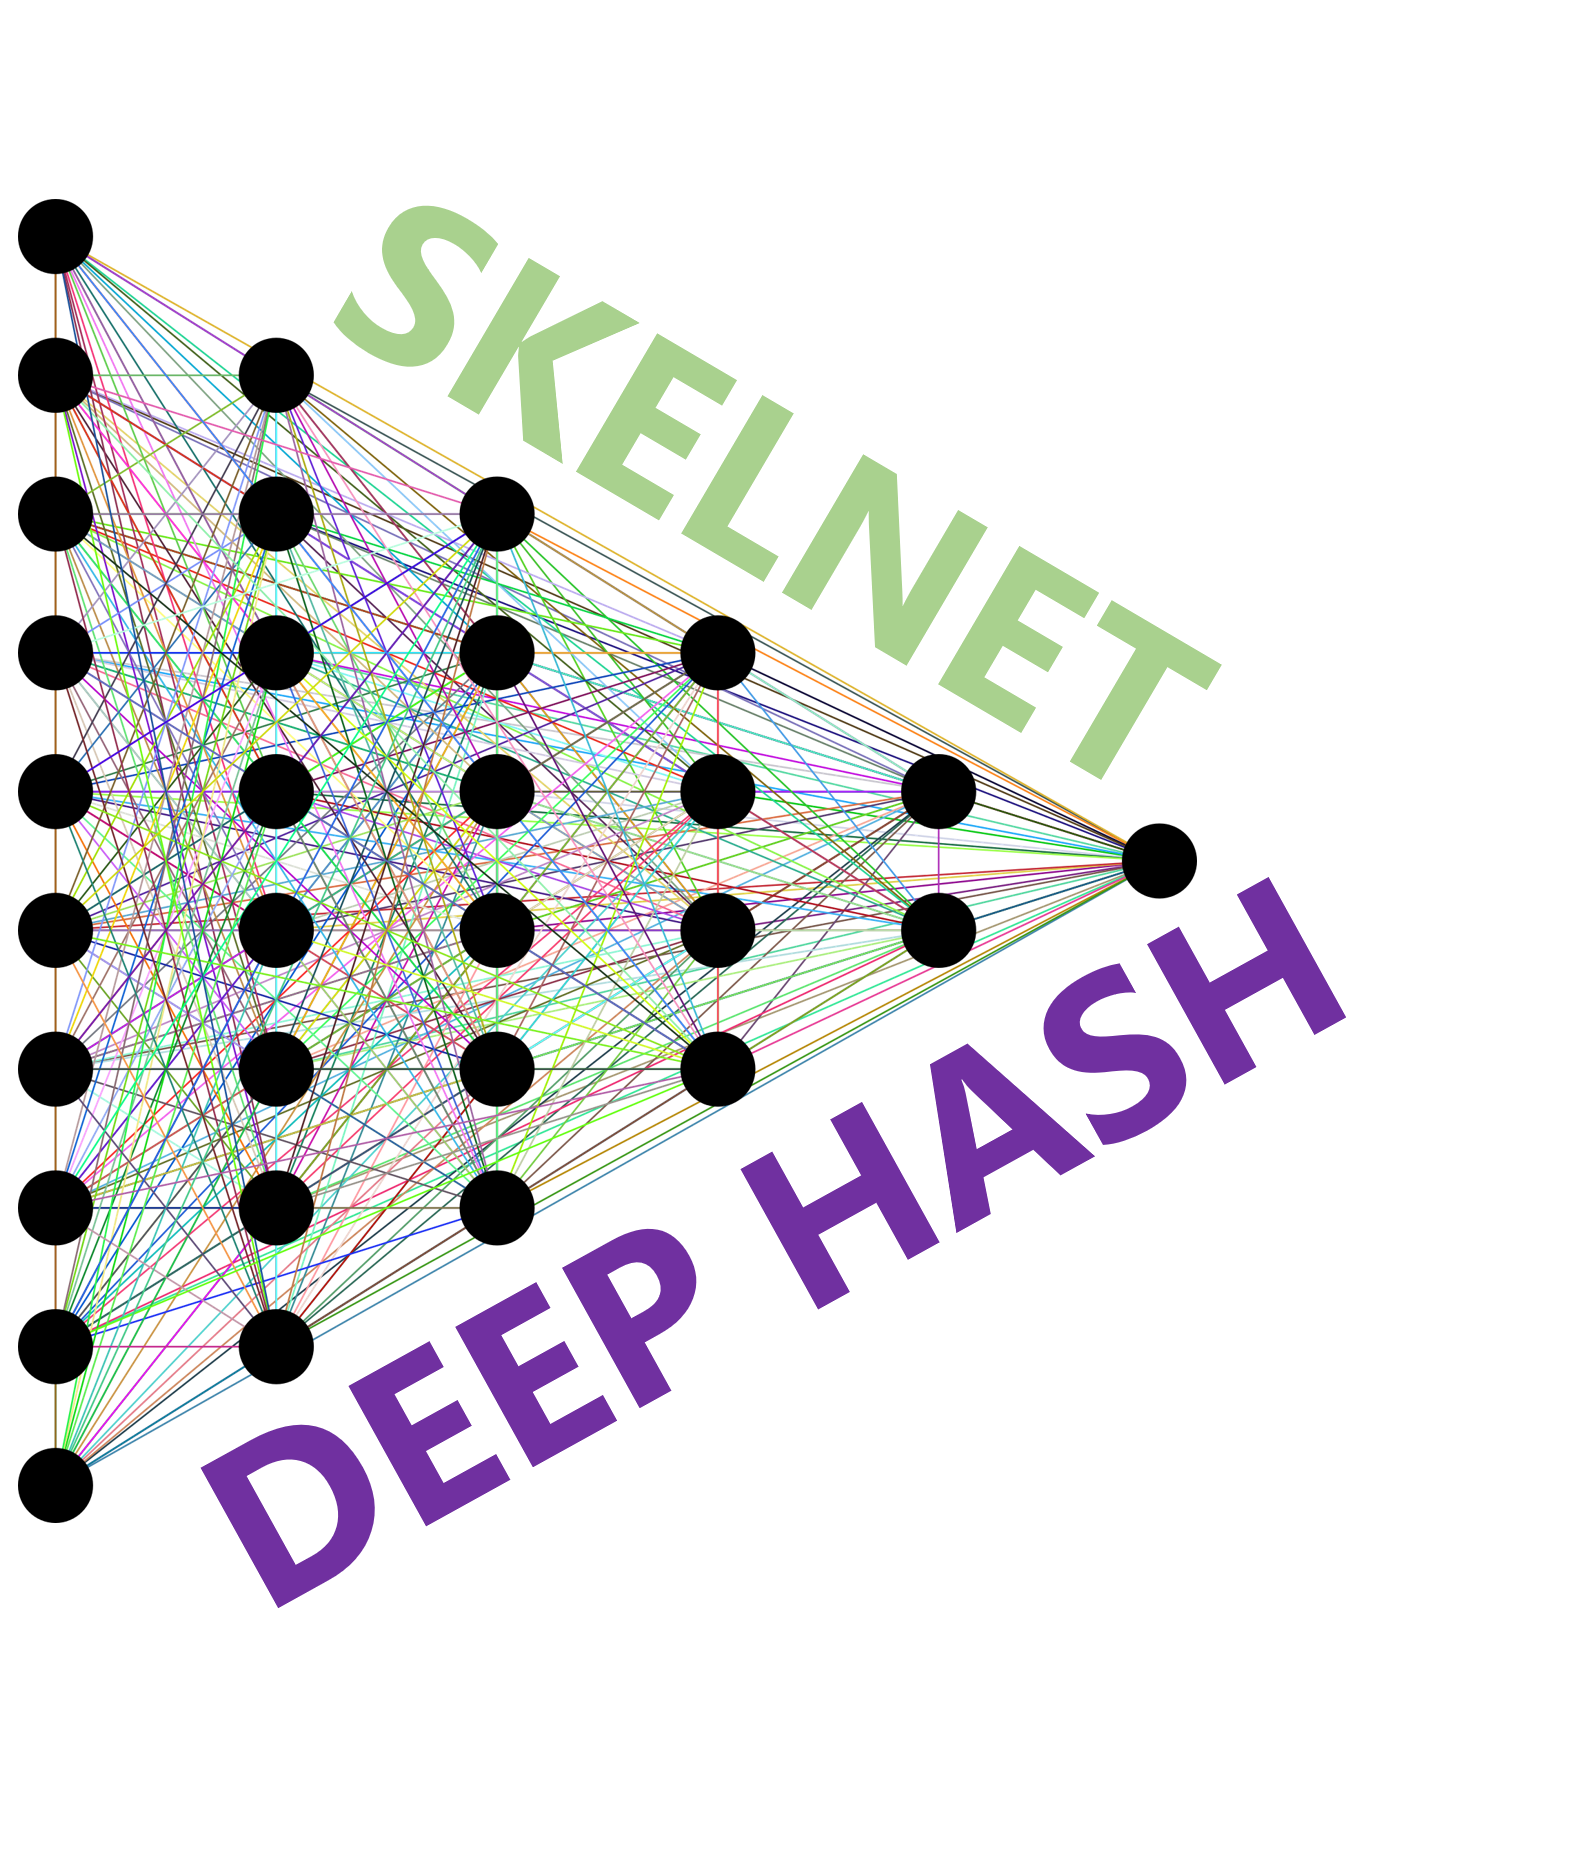 Darstellung der Kombination von DeepHash und SkelNet, die zwei Technologie auf der deepProfile basiert